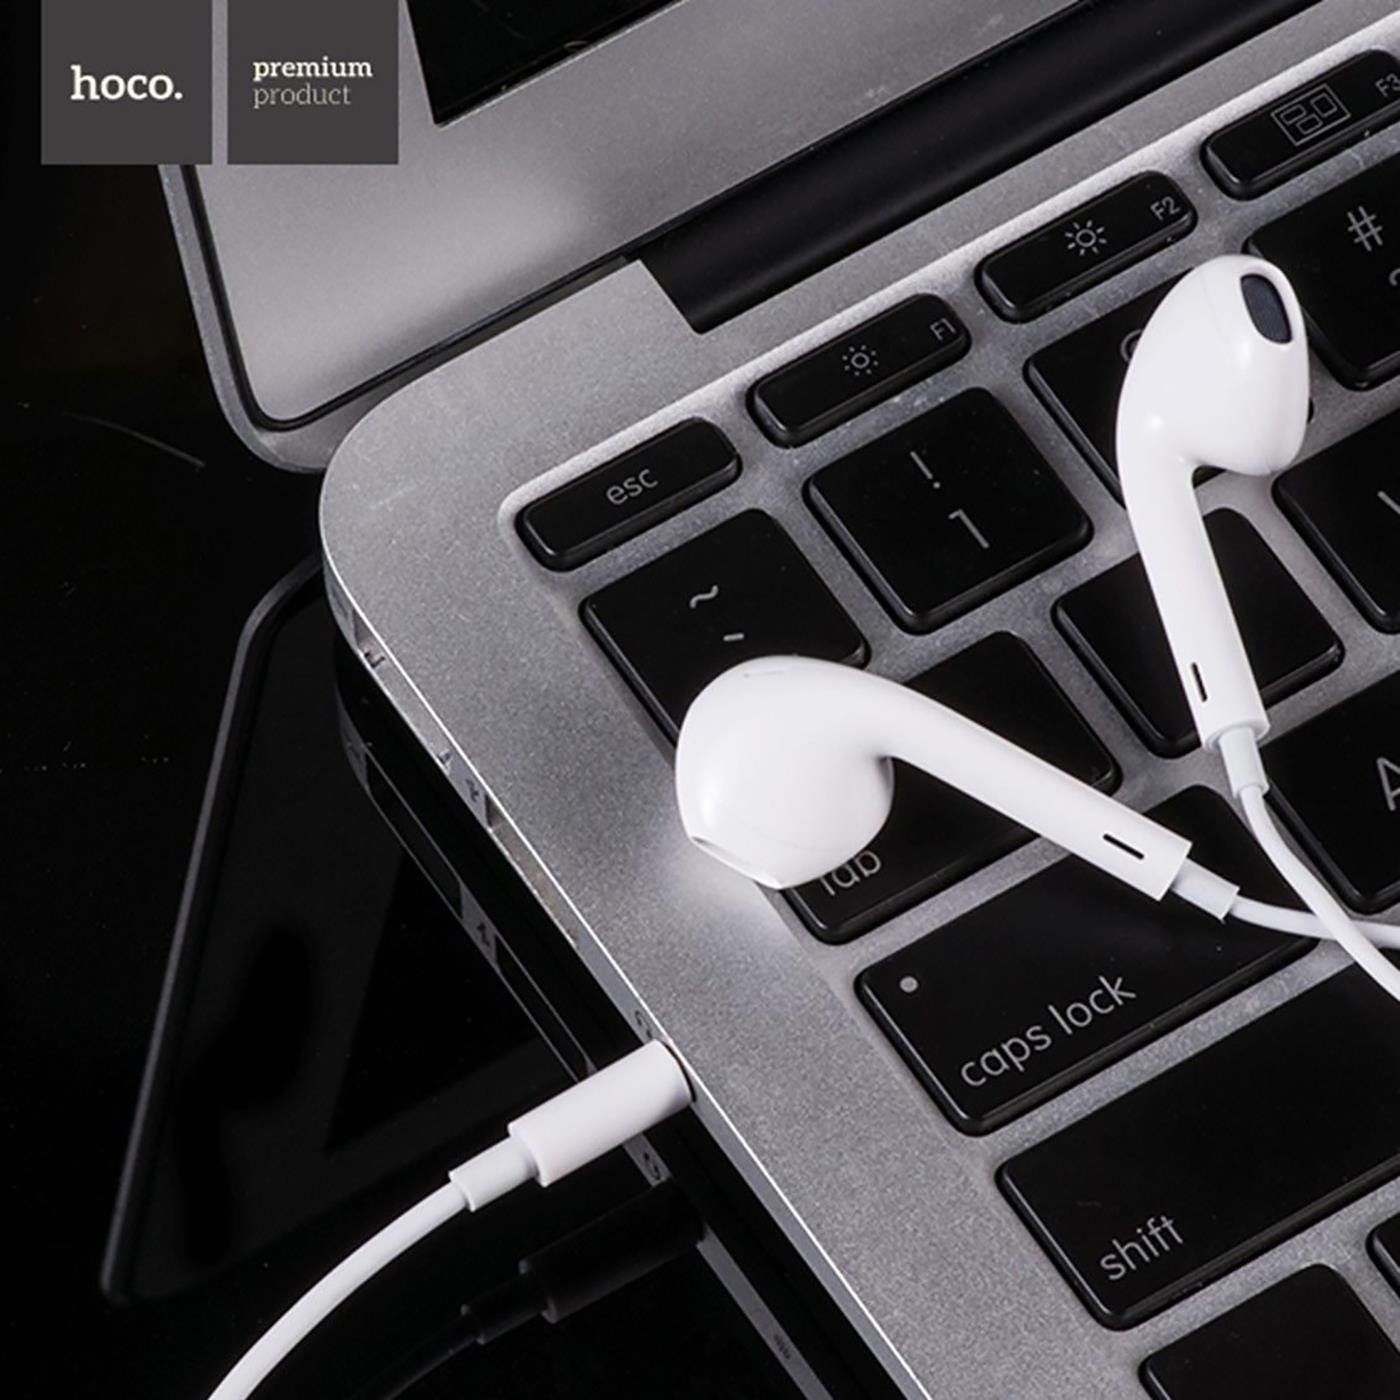 HOCO M1 3,5mm Klinke Smartphone-Headset (Köpfhörer mm Headset Mikrofon Beat) 3.5 In Ear Klinke mit